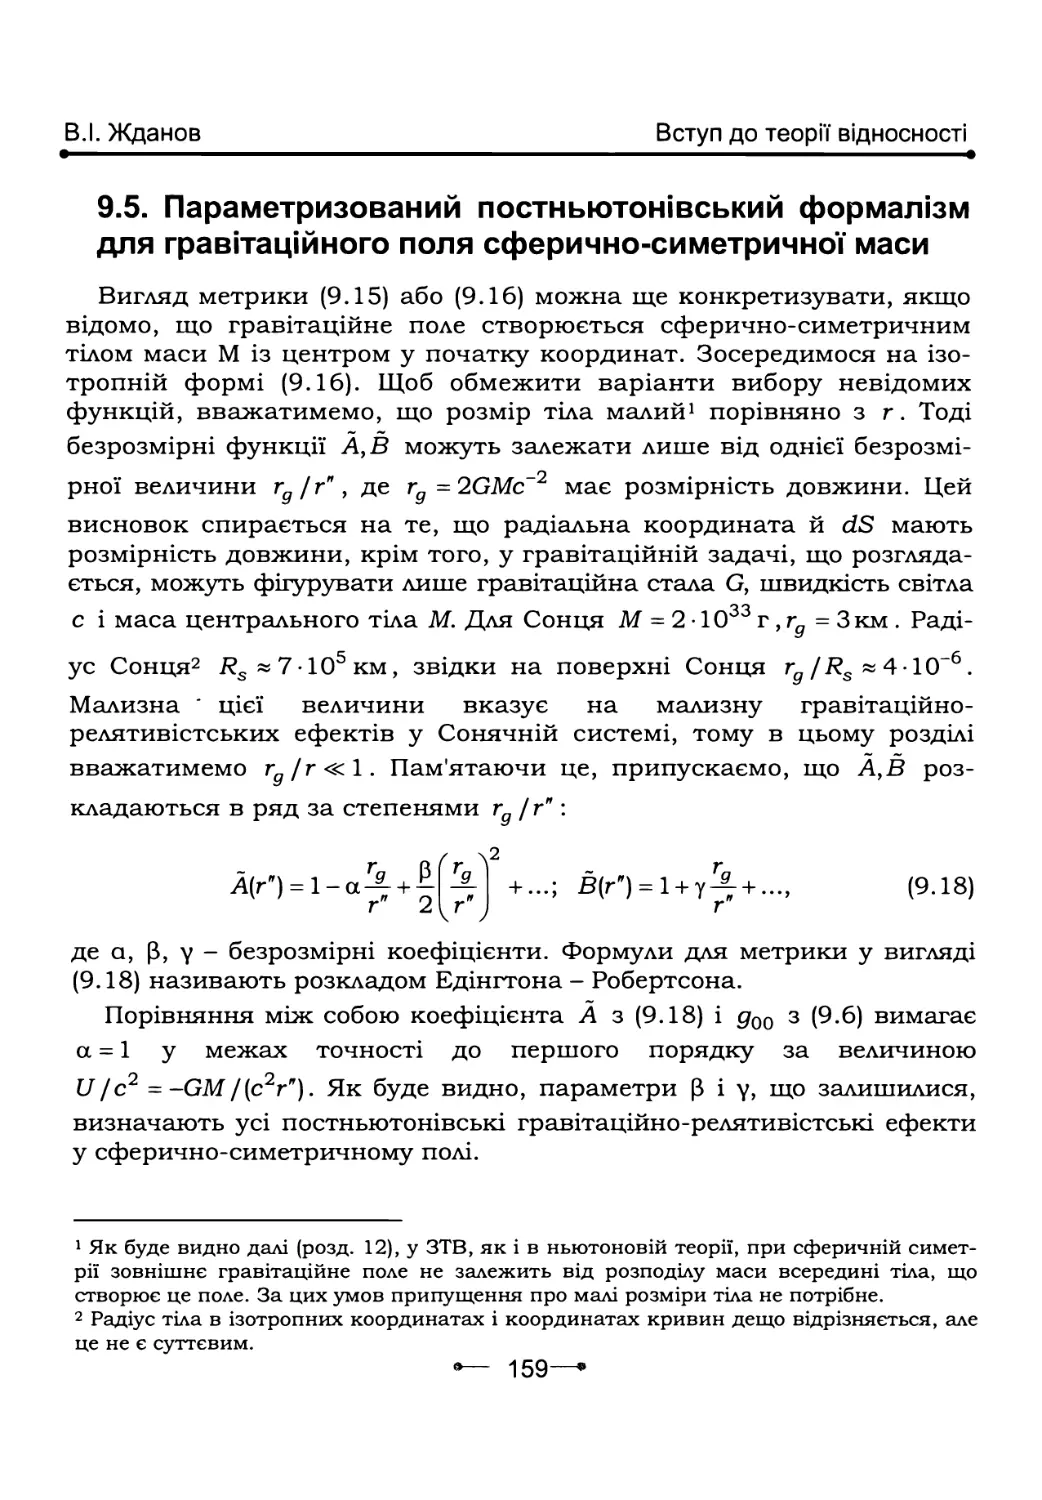 9.5.        Параметризований постньютонівський формалізм для гравітаційного поля сферично-симетричної маси